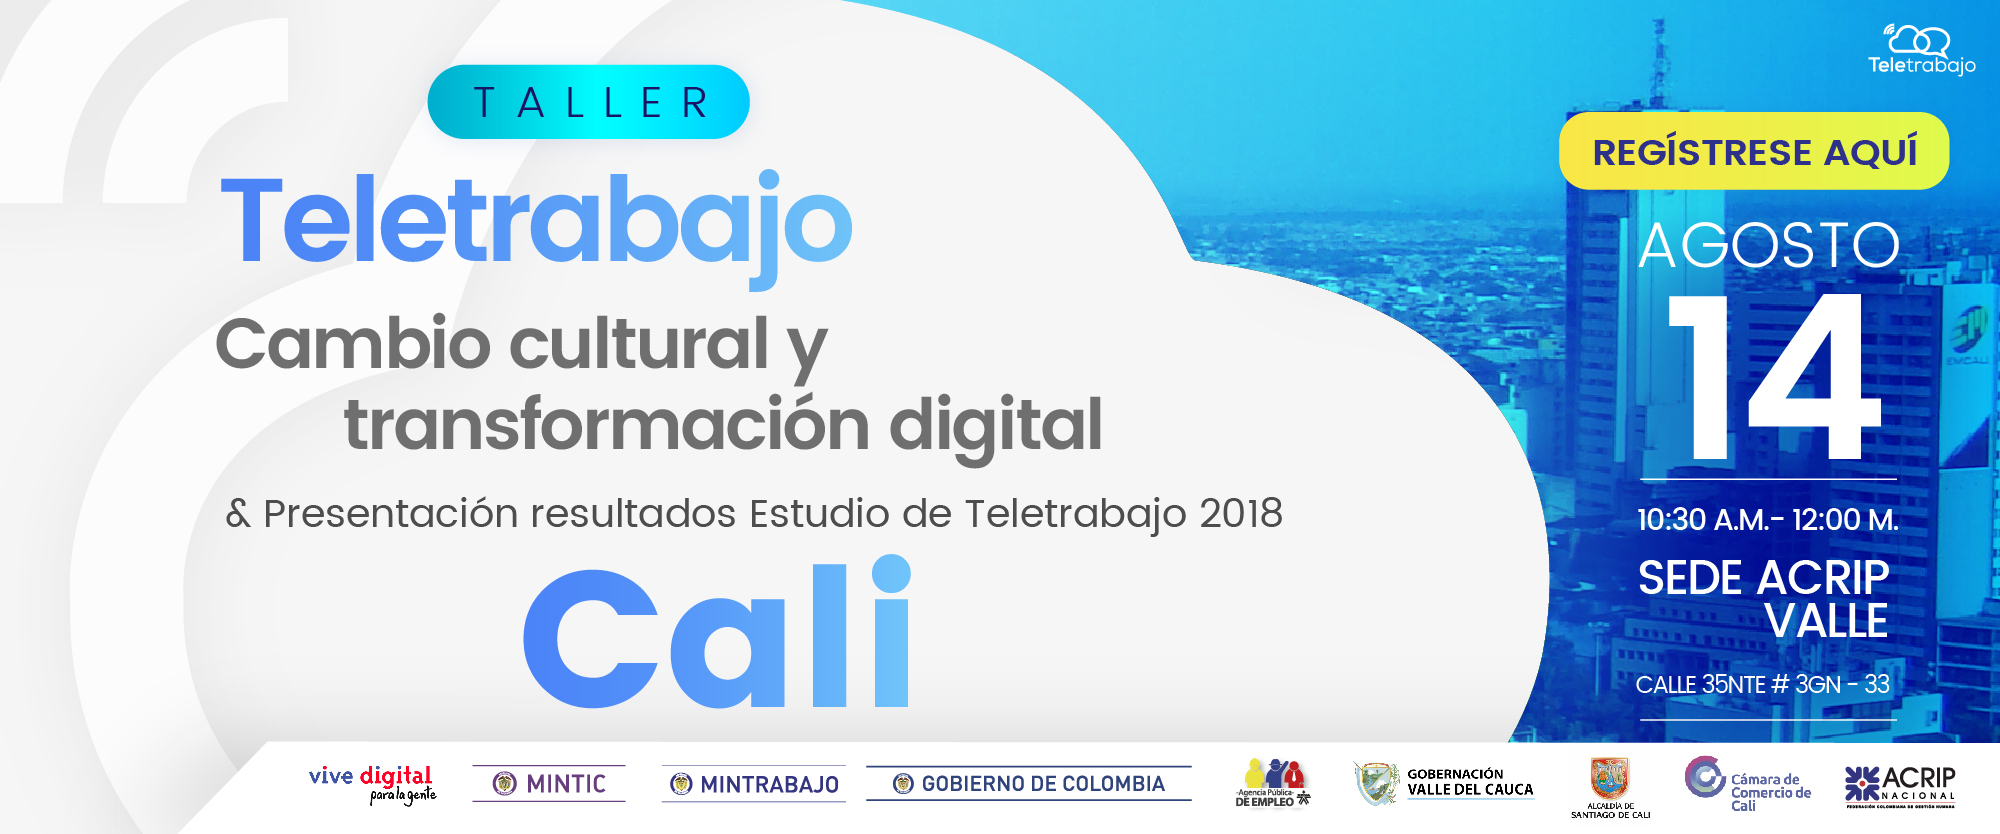 Cali Teletrabaja: Taller para su implementación y presentación de resultados nuevo Estudio